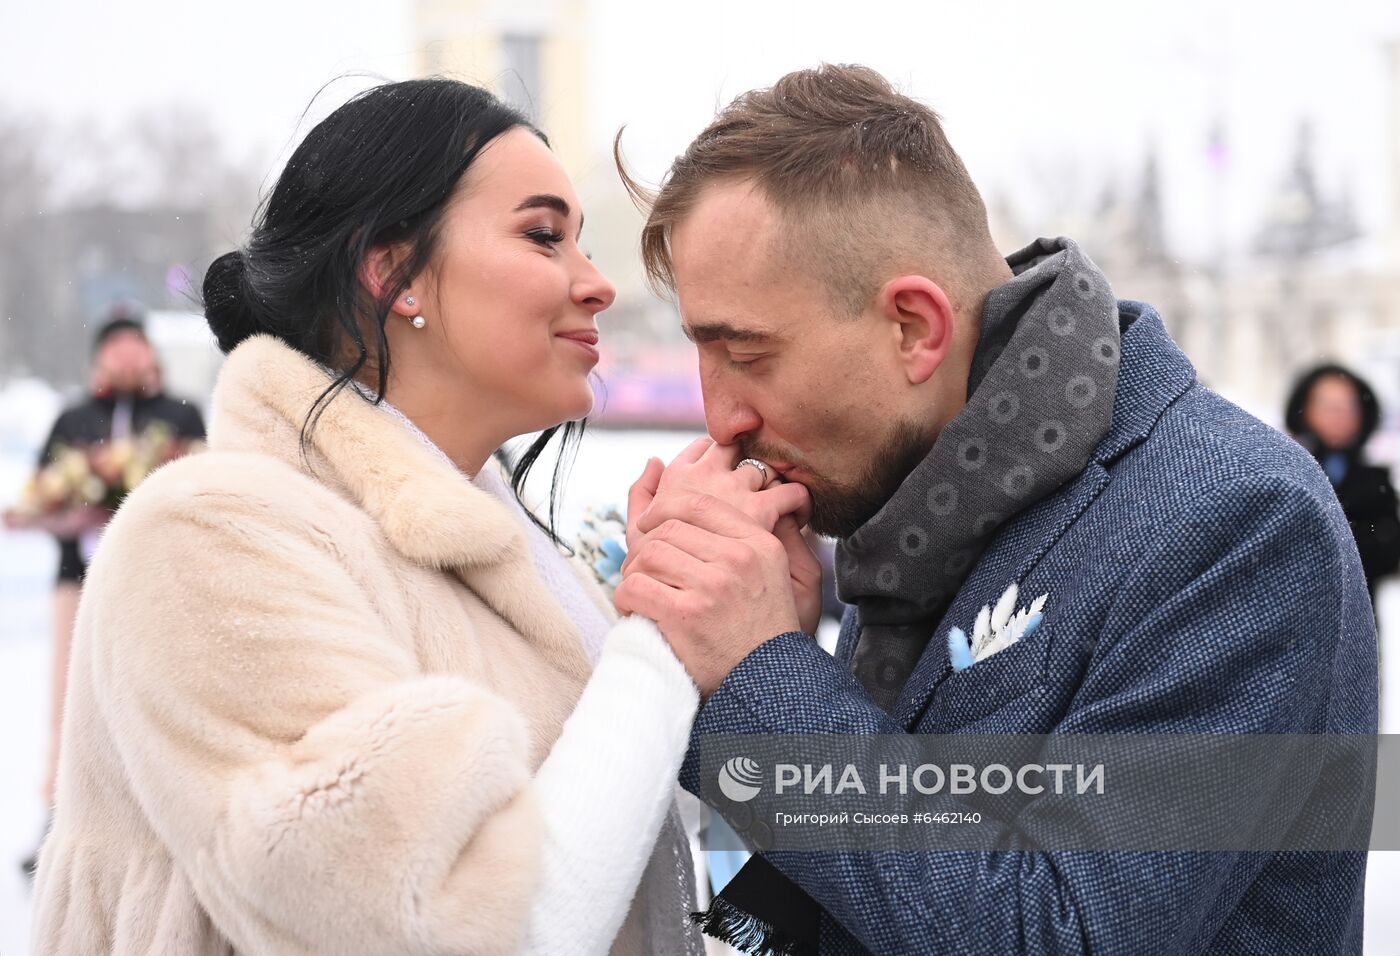 Празднование Дня всех влюбленных в Москве